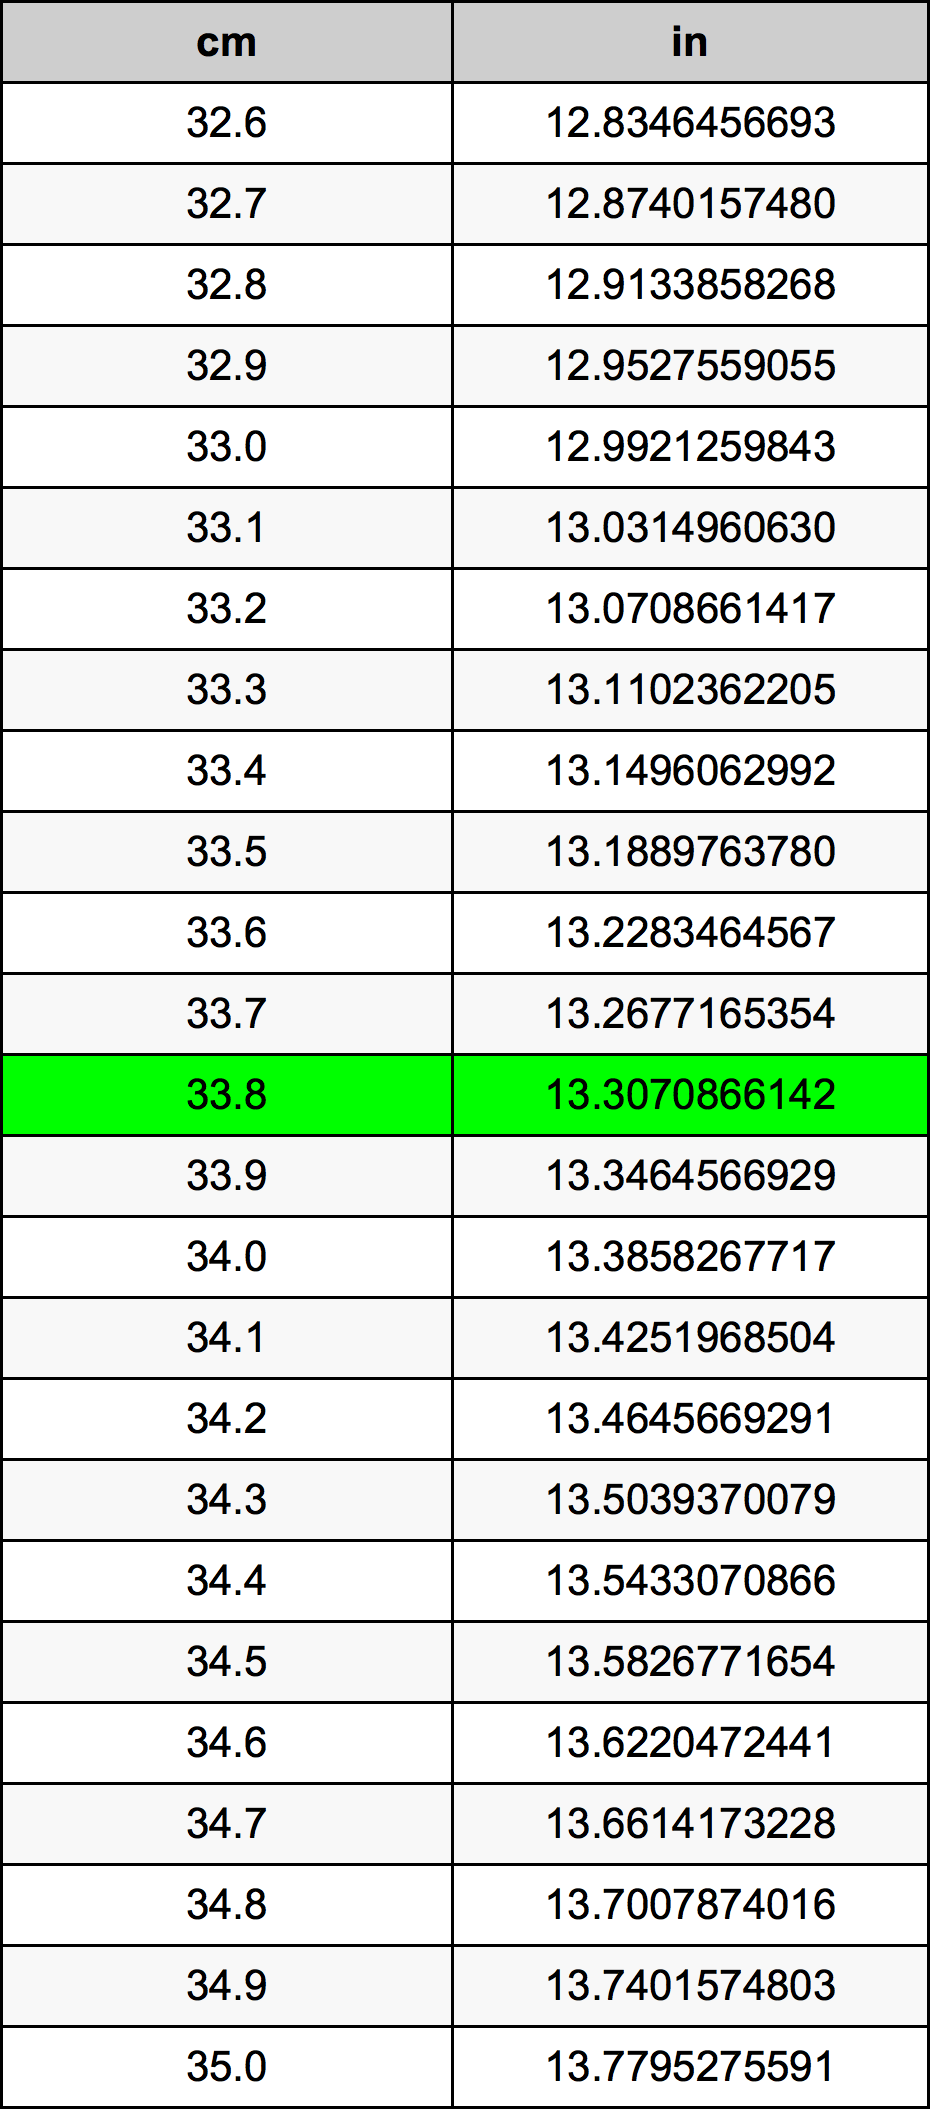 33.8 Centiméter átszámítási táblázat